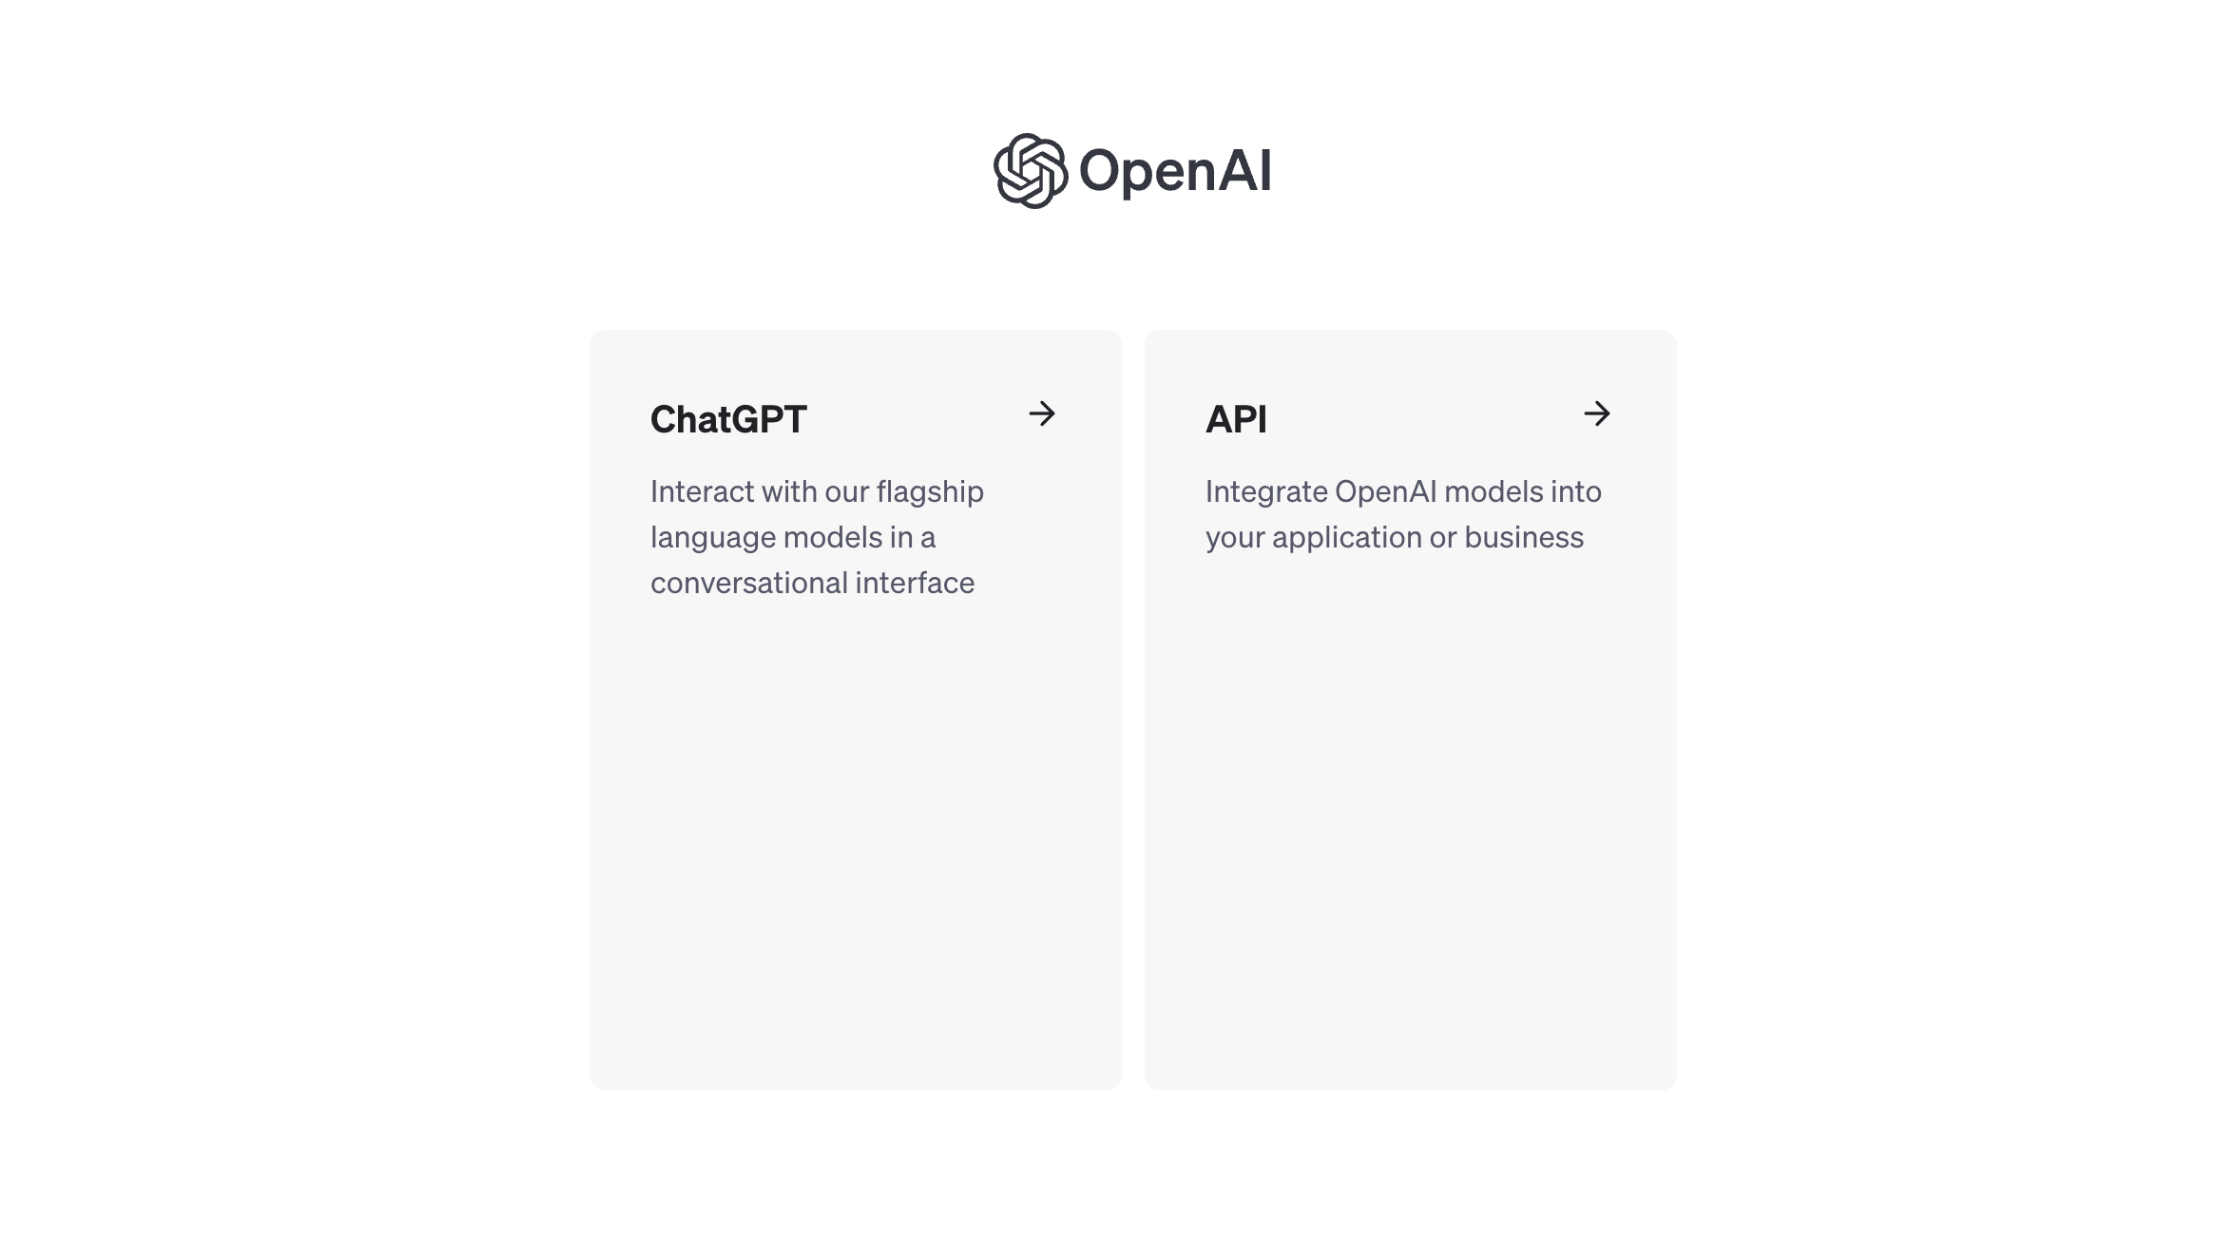 Captura de pantalla de la página de OpenAI mostrando dos tarjetas de servicio, una para ChatGPT, describiendo la interacción con modelos de lenguaje avanzados, y otra para la API de OpenAI, indicando la integración de modelos de OpenAI en aplicaciones y negocios